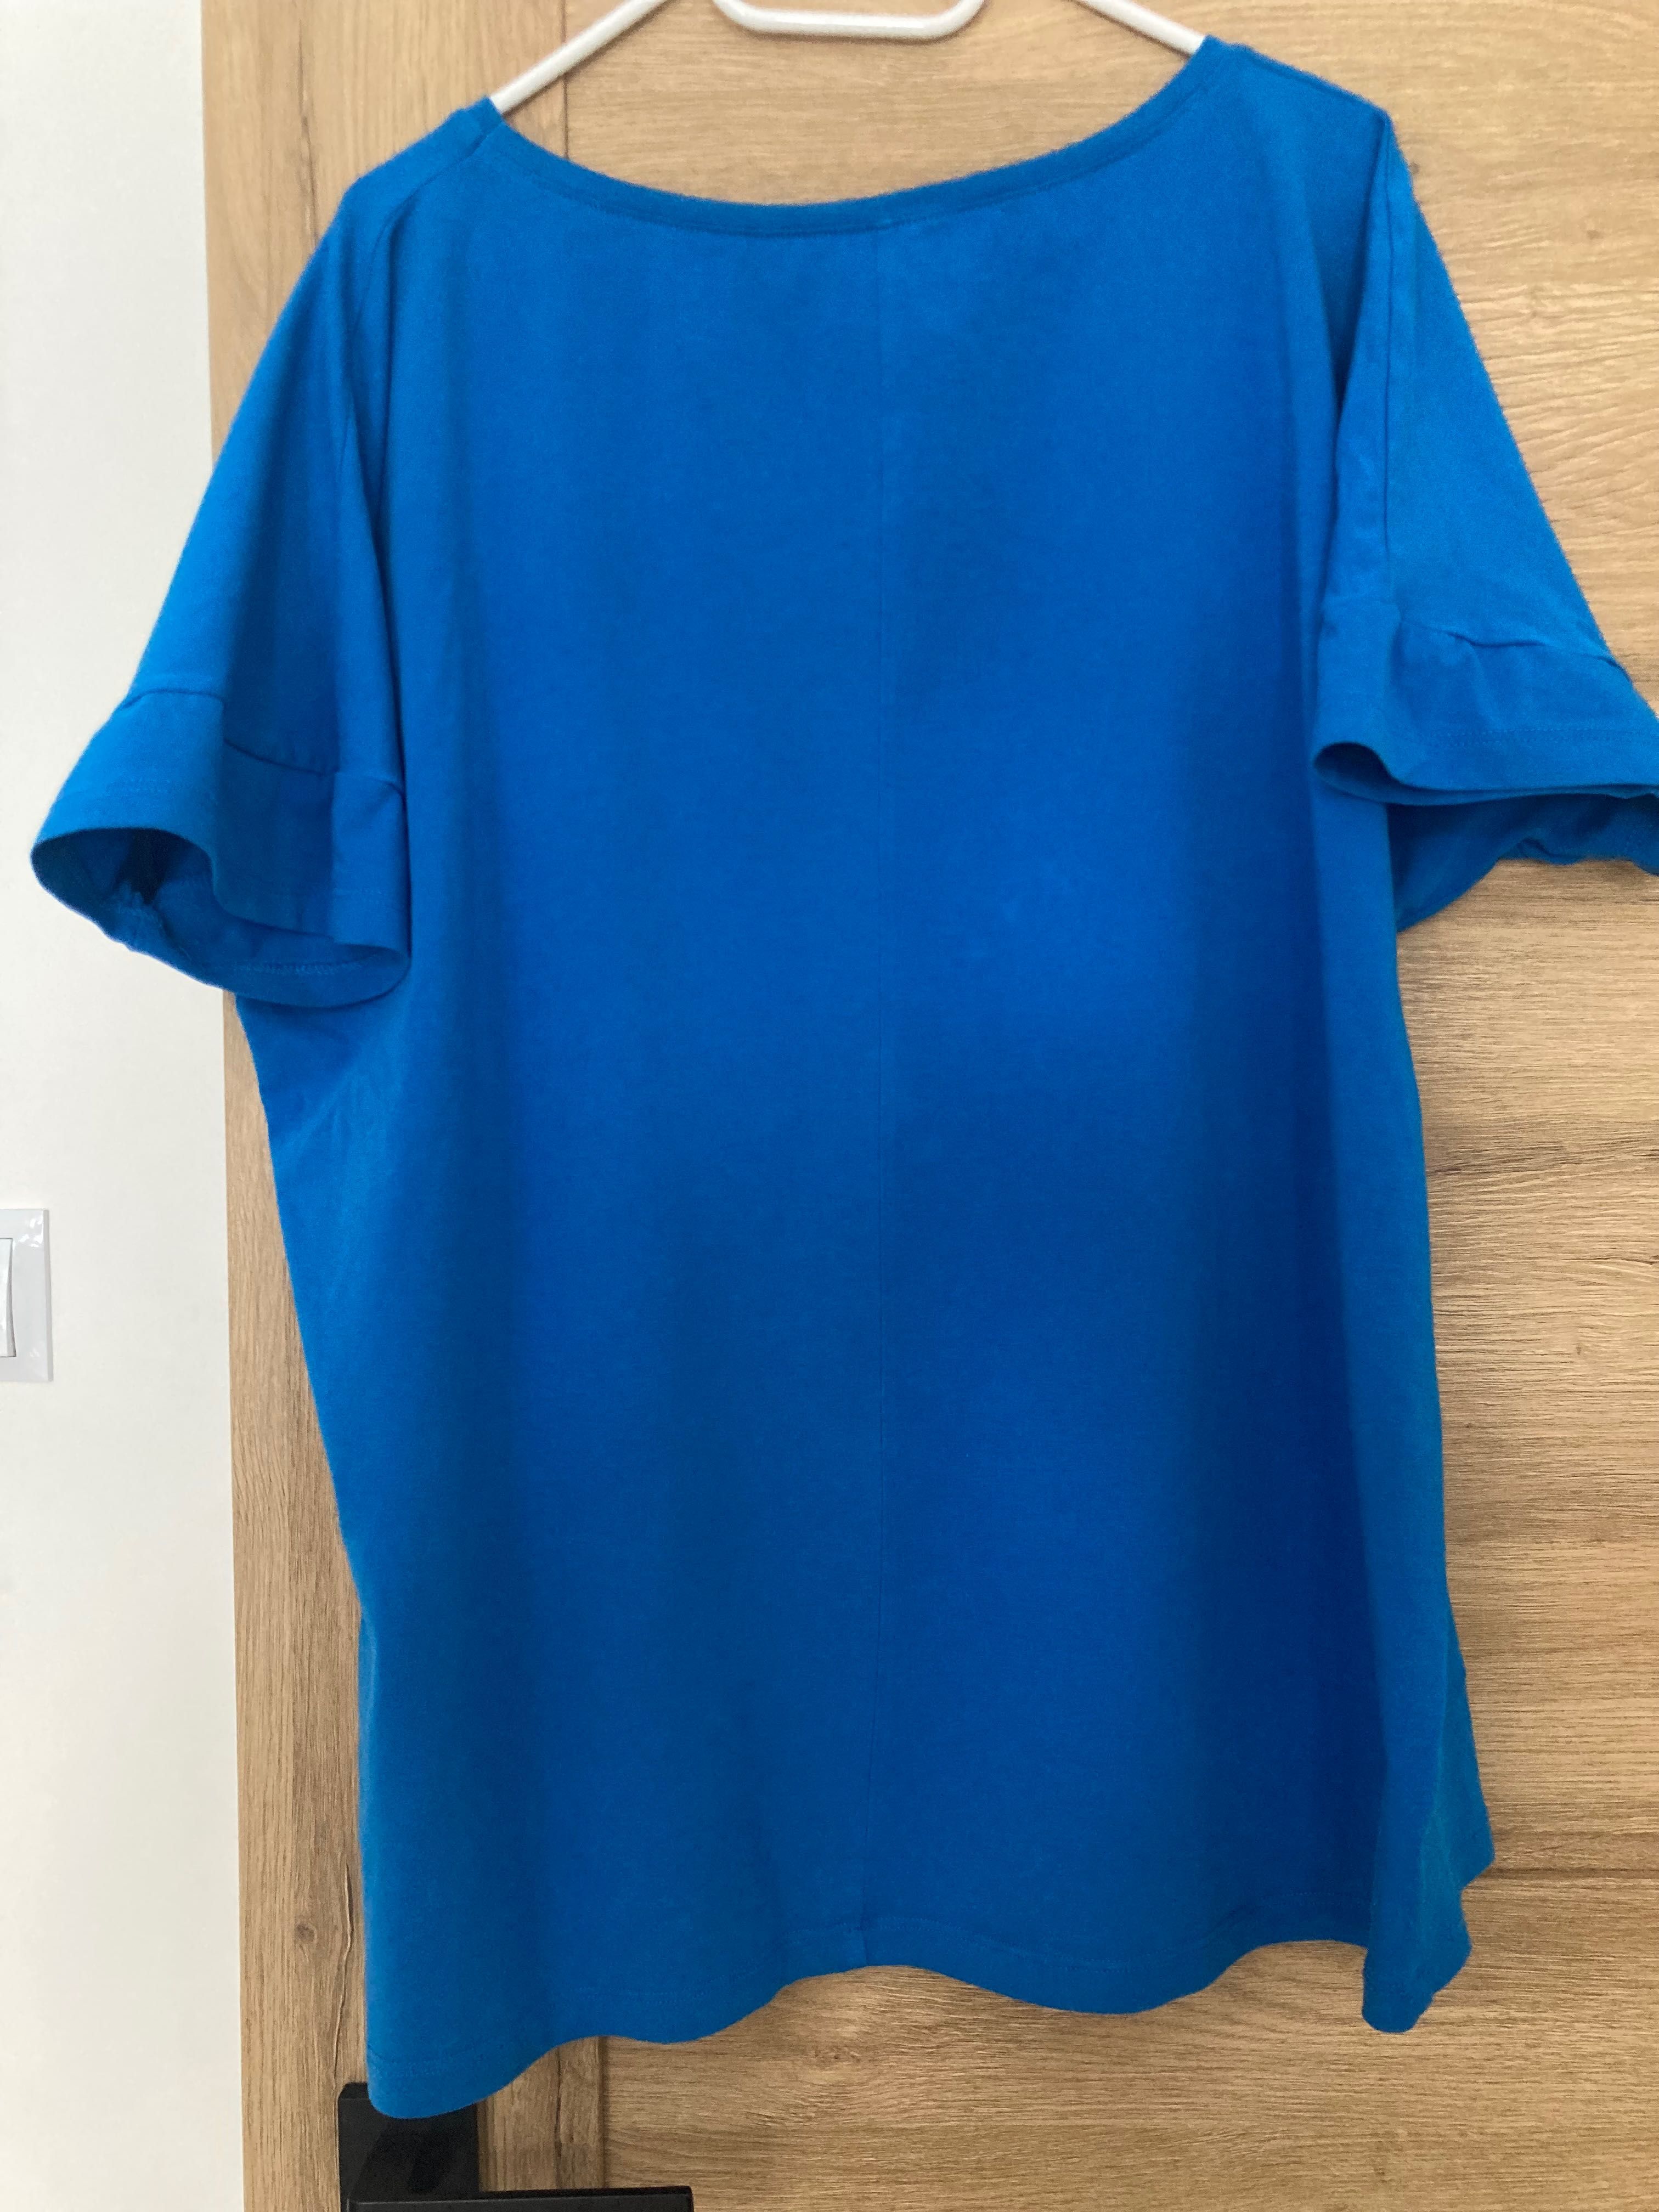 Bluzka damska Megi, XL, niebieska